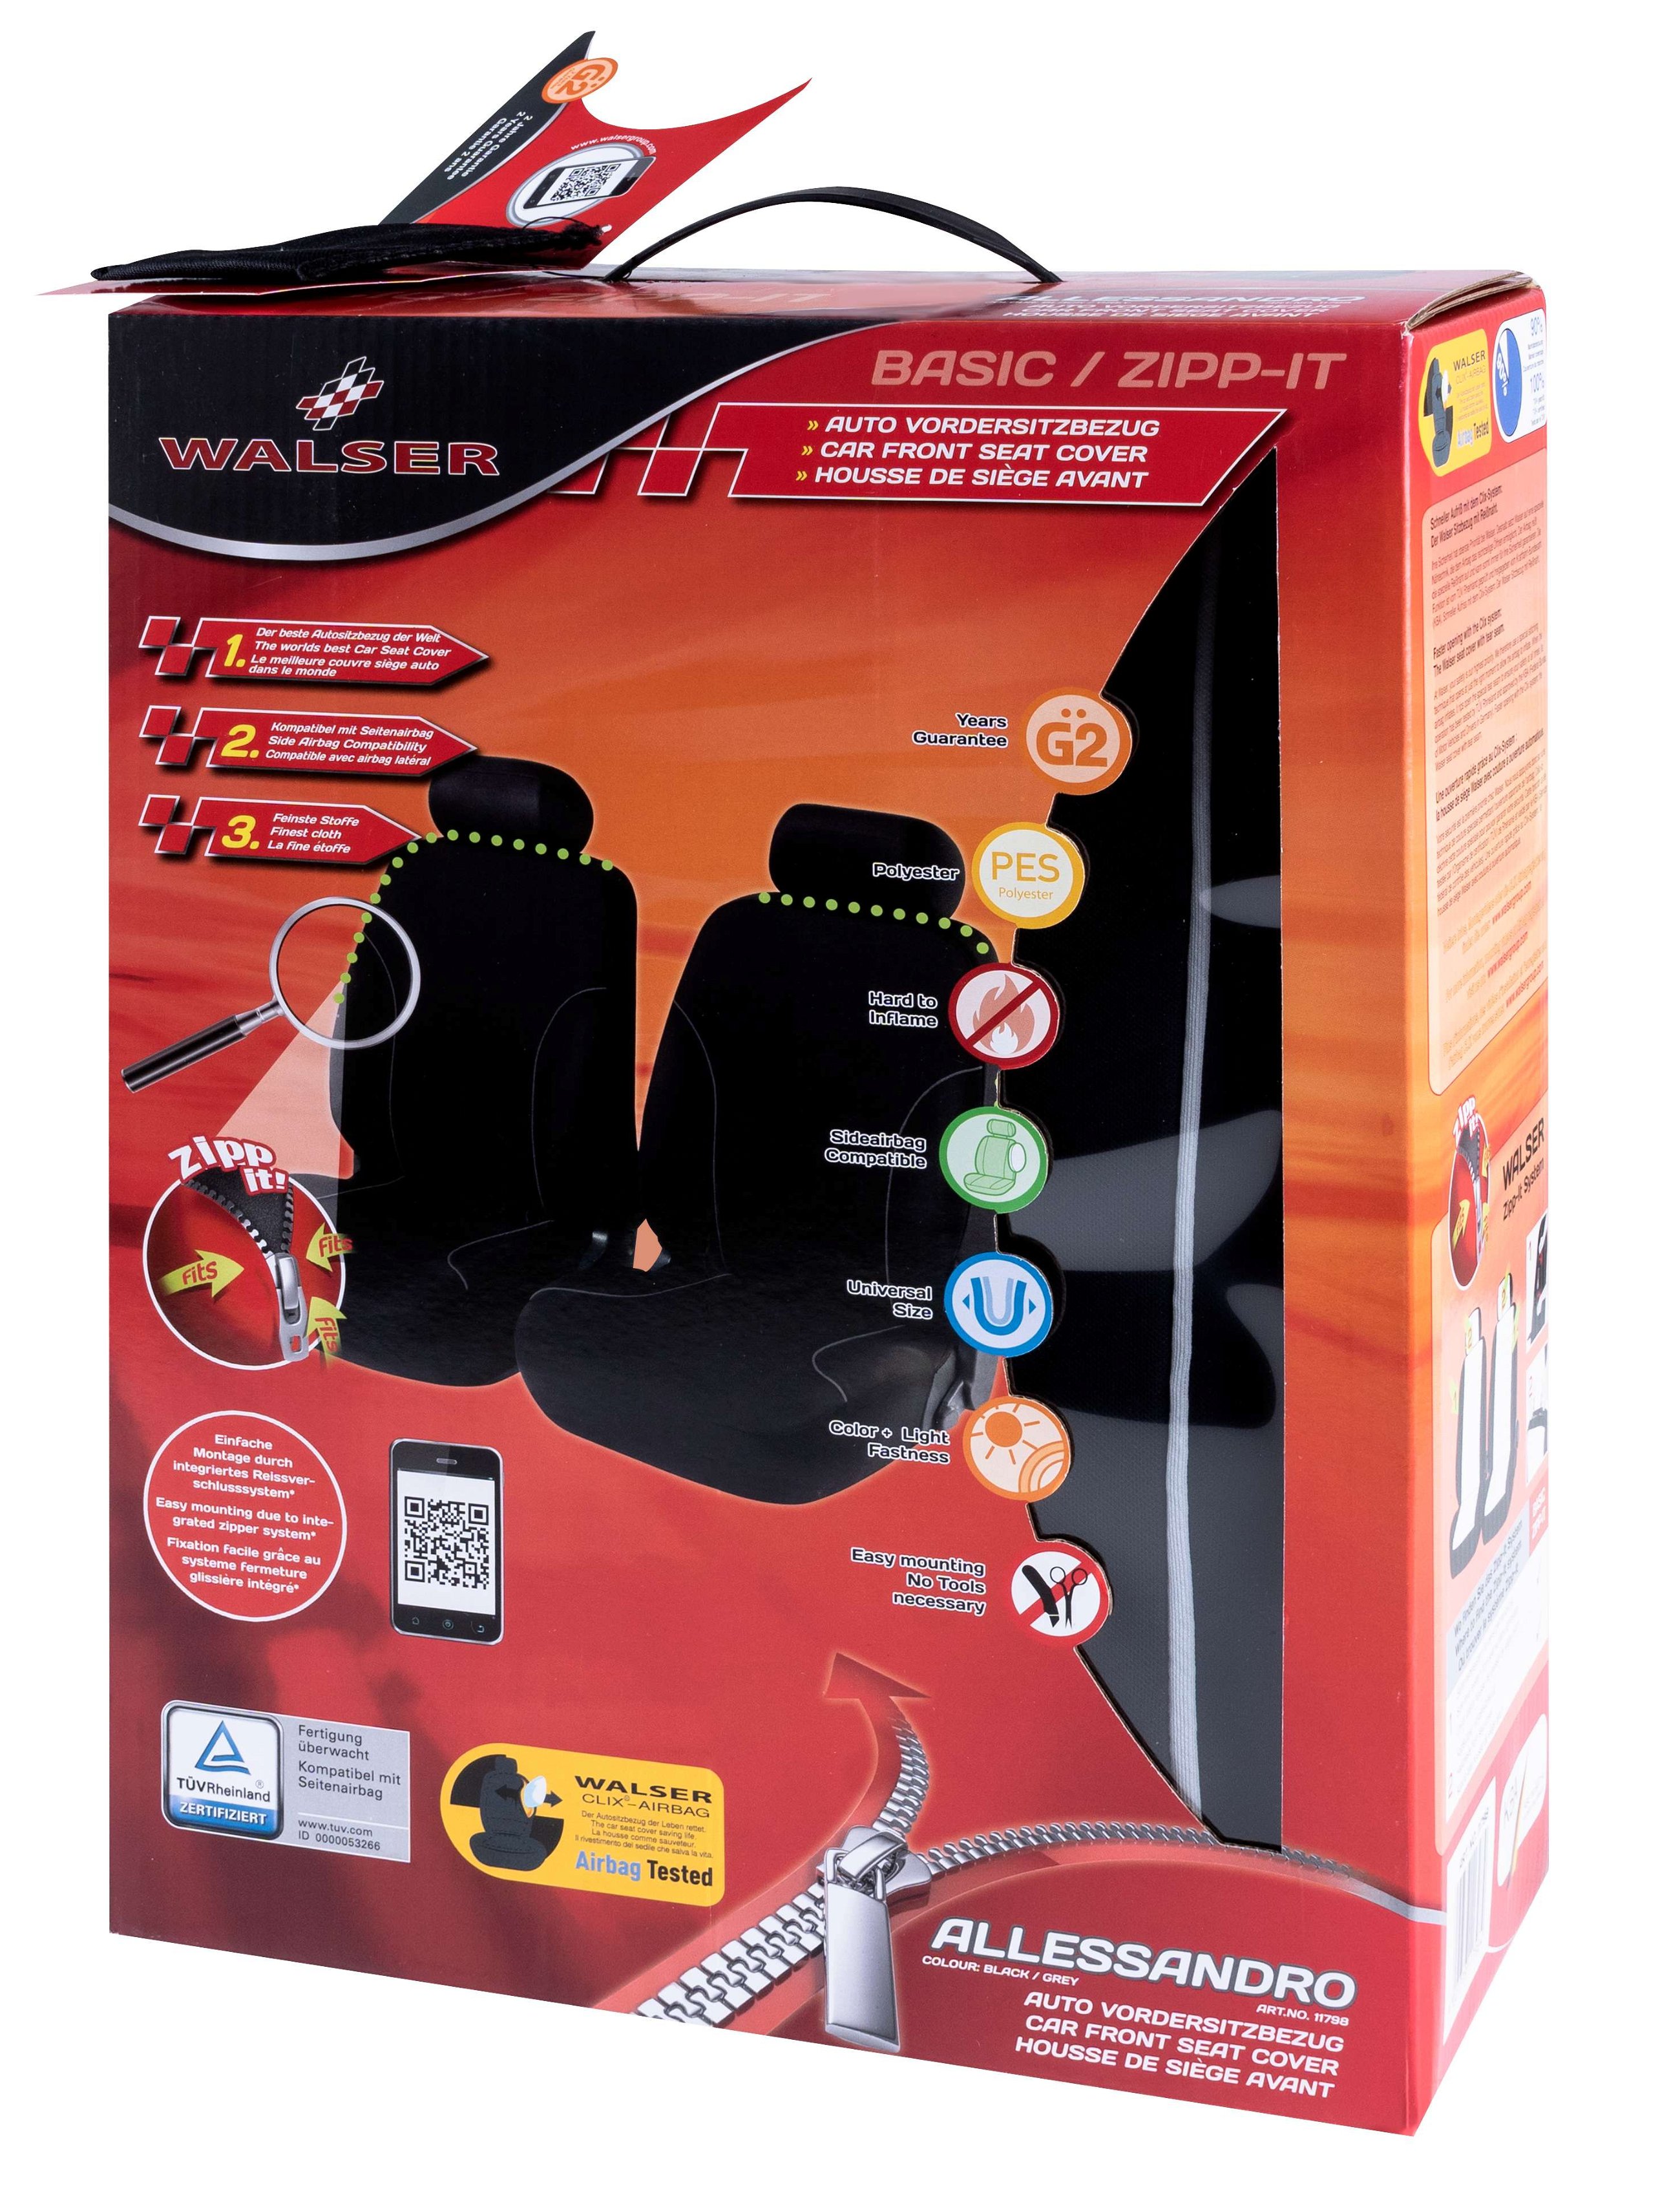 Auto stoelbeschermer Allessandro met Zipper ZIPP-IT Autostoelhoes, 2 stoelbeschermer voor voorstoel zwart